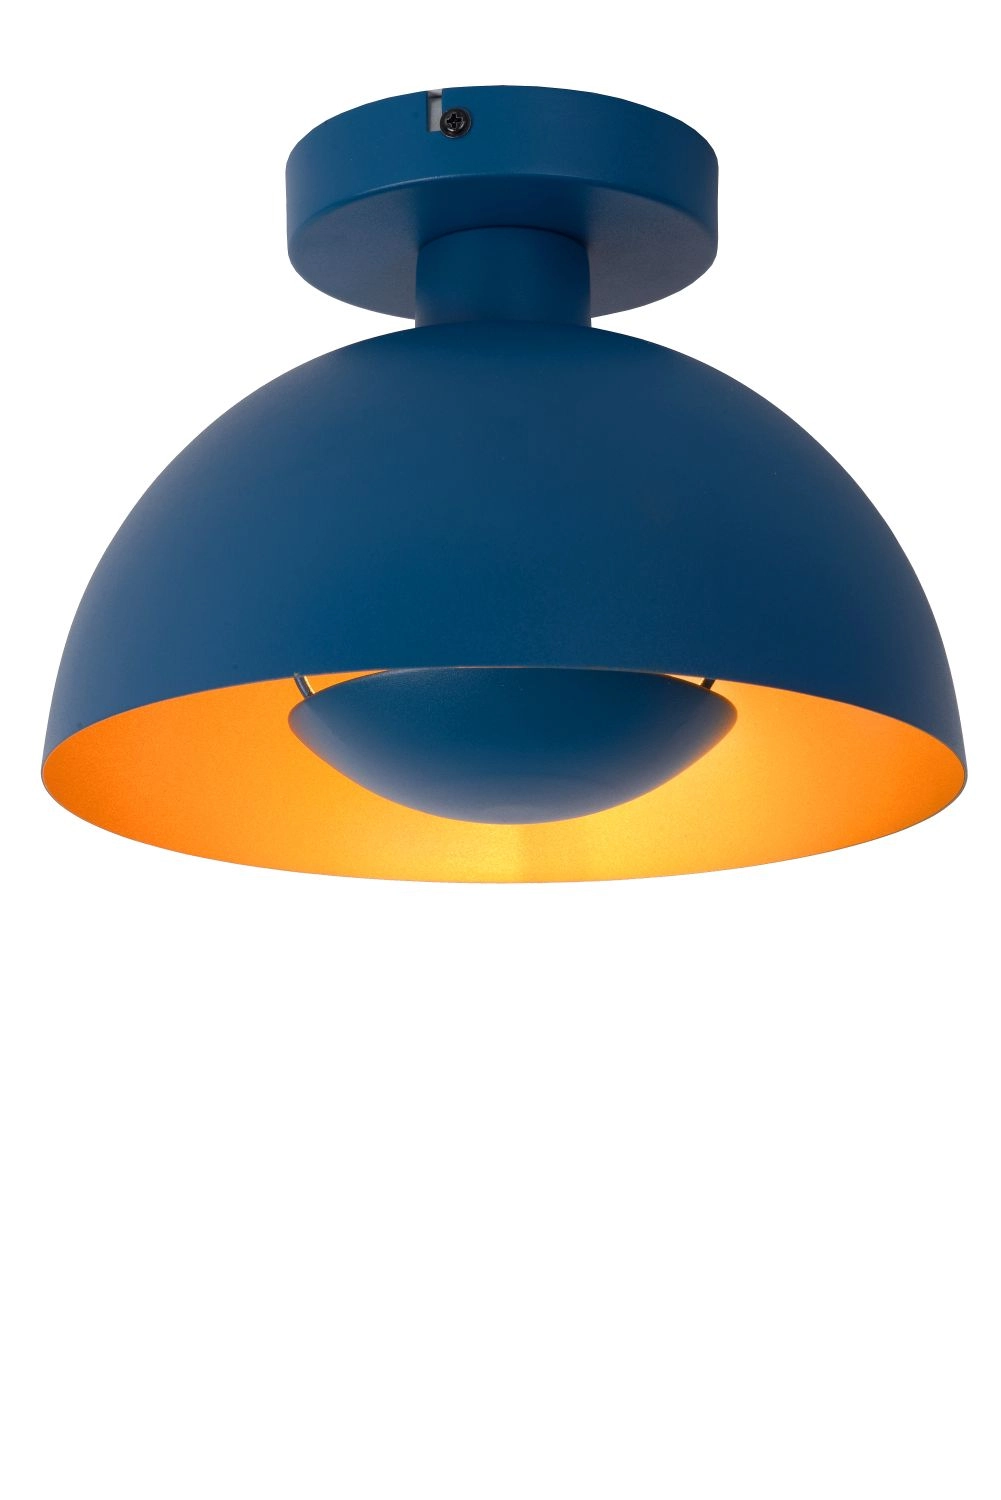 LU 45196/01/35 Lucide SIEMON - Flush ceiling light - Ø 25 cm - 1xE27 - Blue